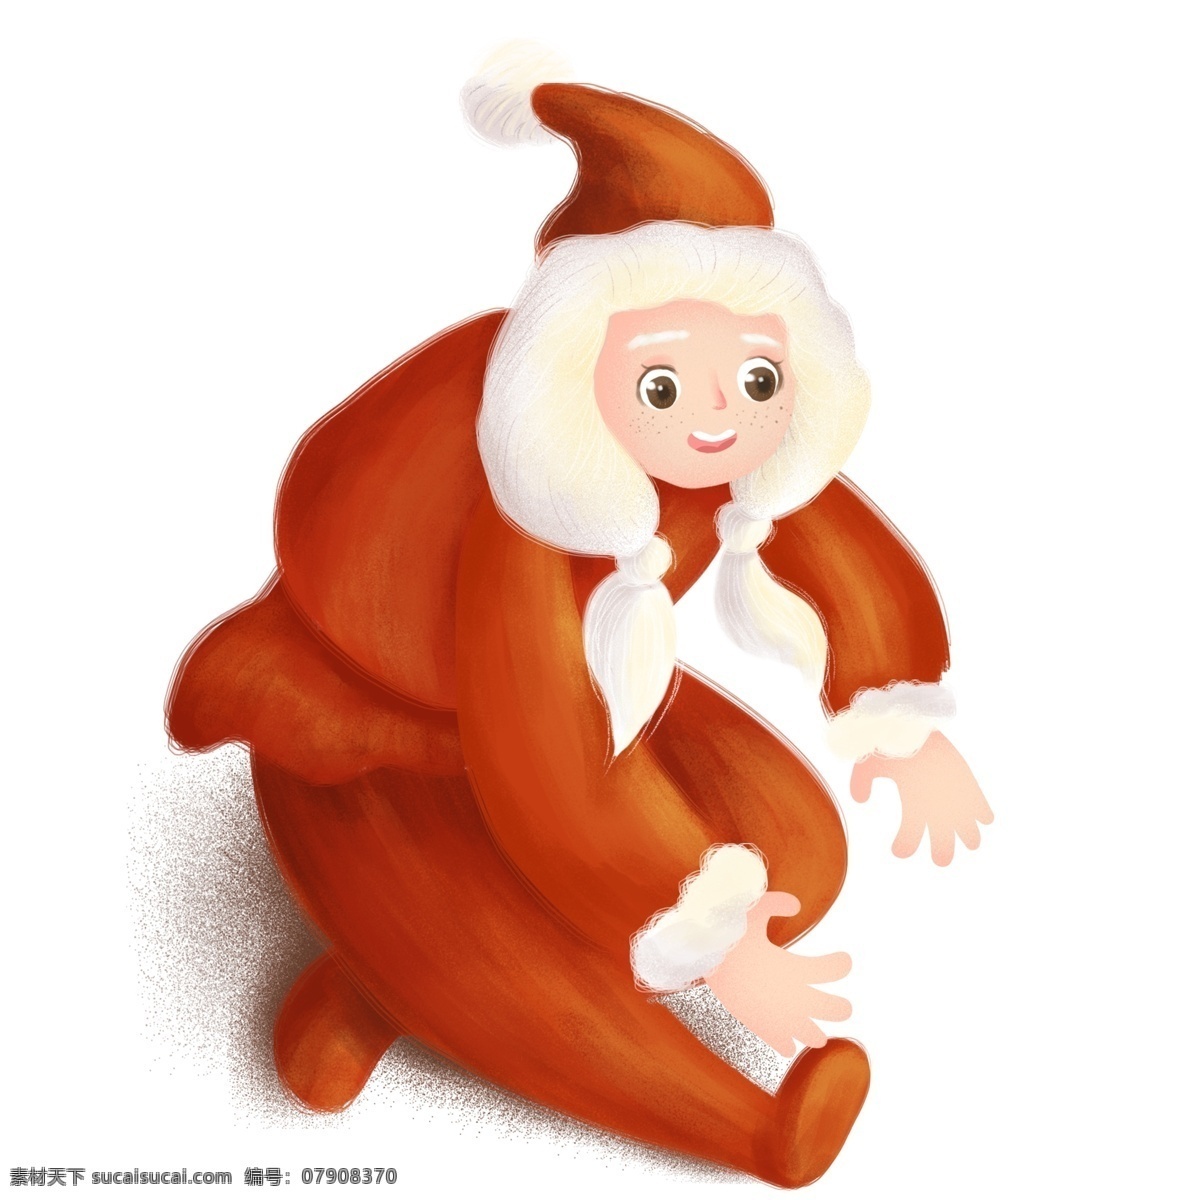 创意 圣诞节 圣诞老人 装扮 女孩 卡通 可爱 插画 手绘